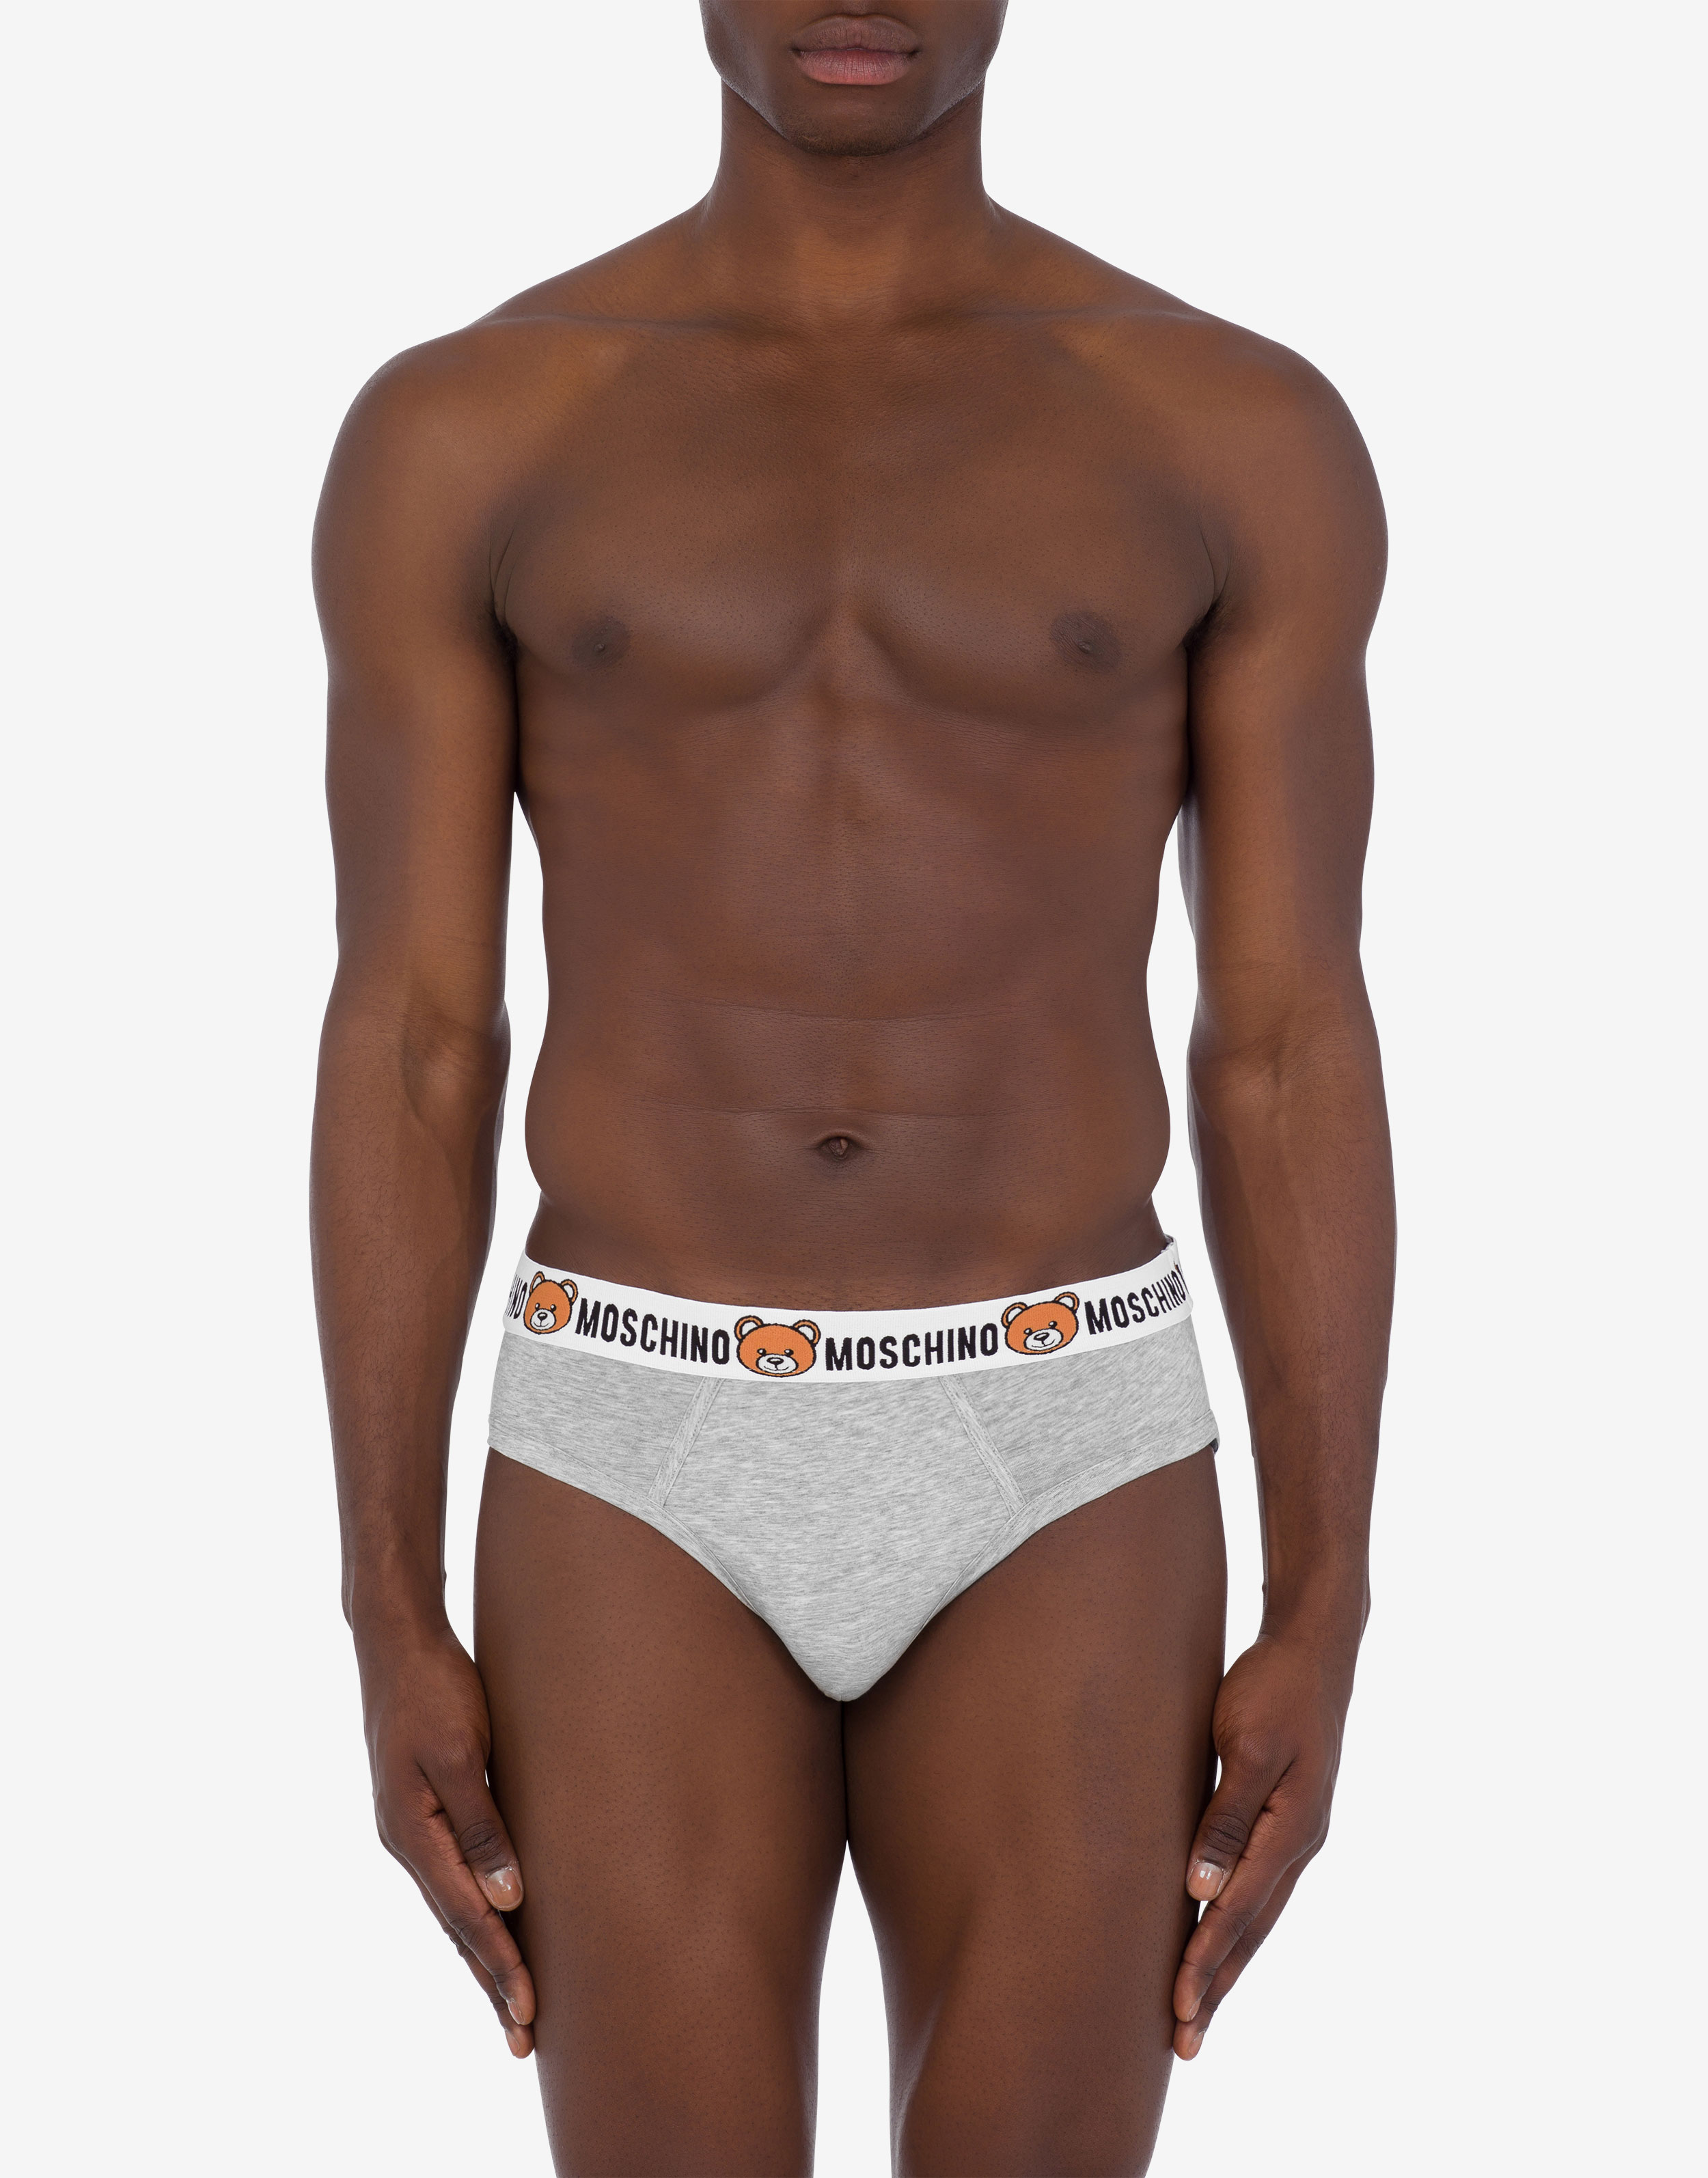 Moschino underwear Men XS size white Boxer pants 2 pieces